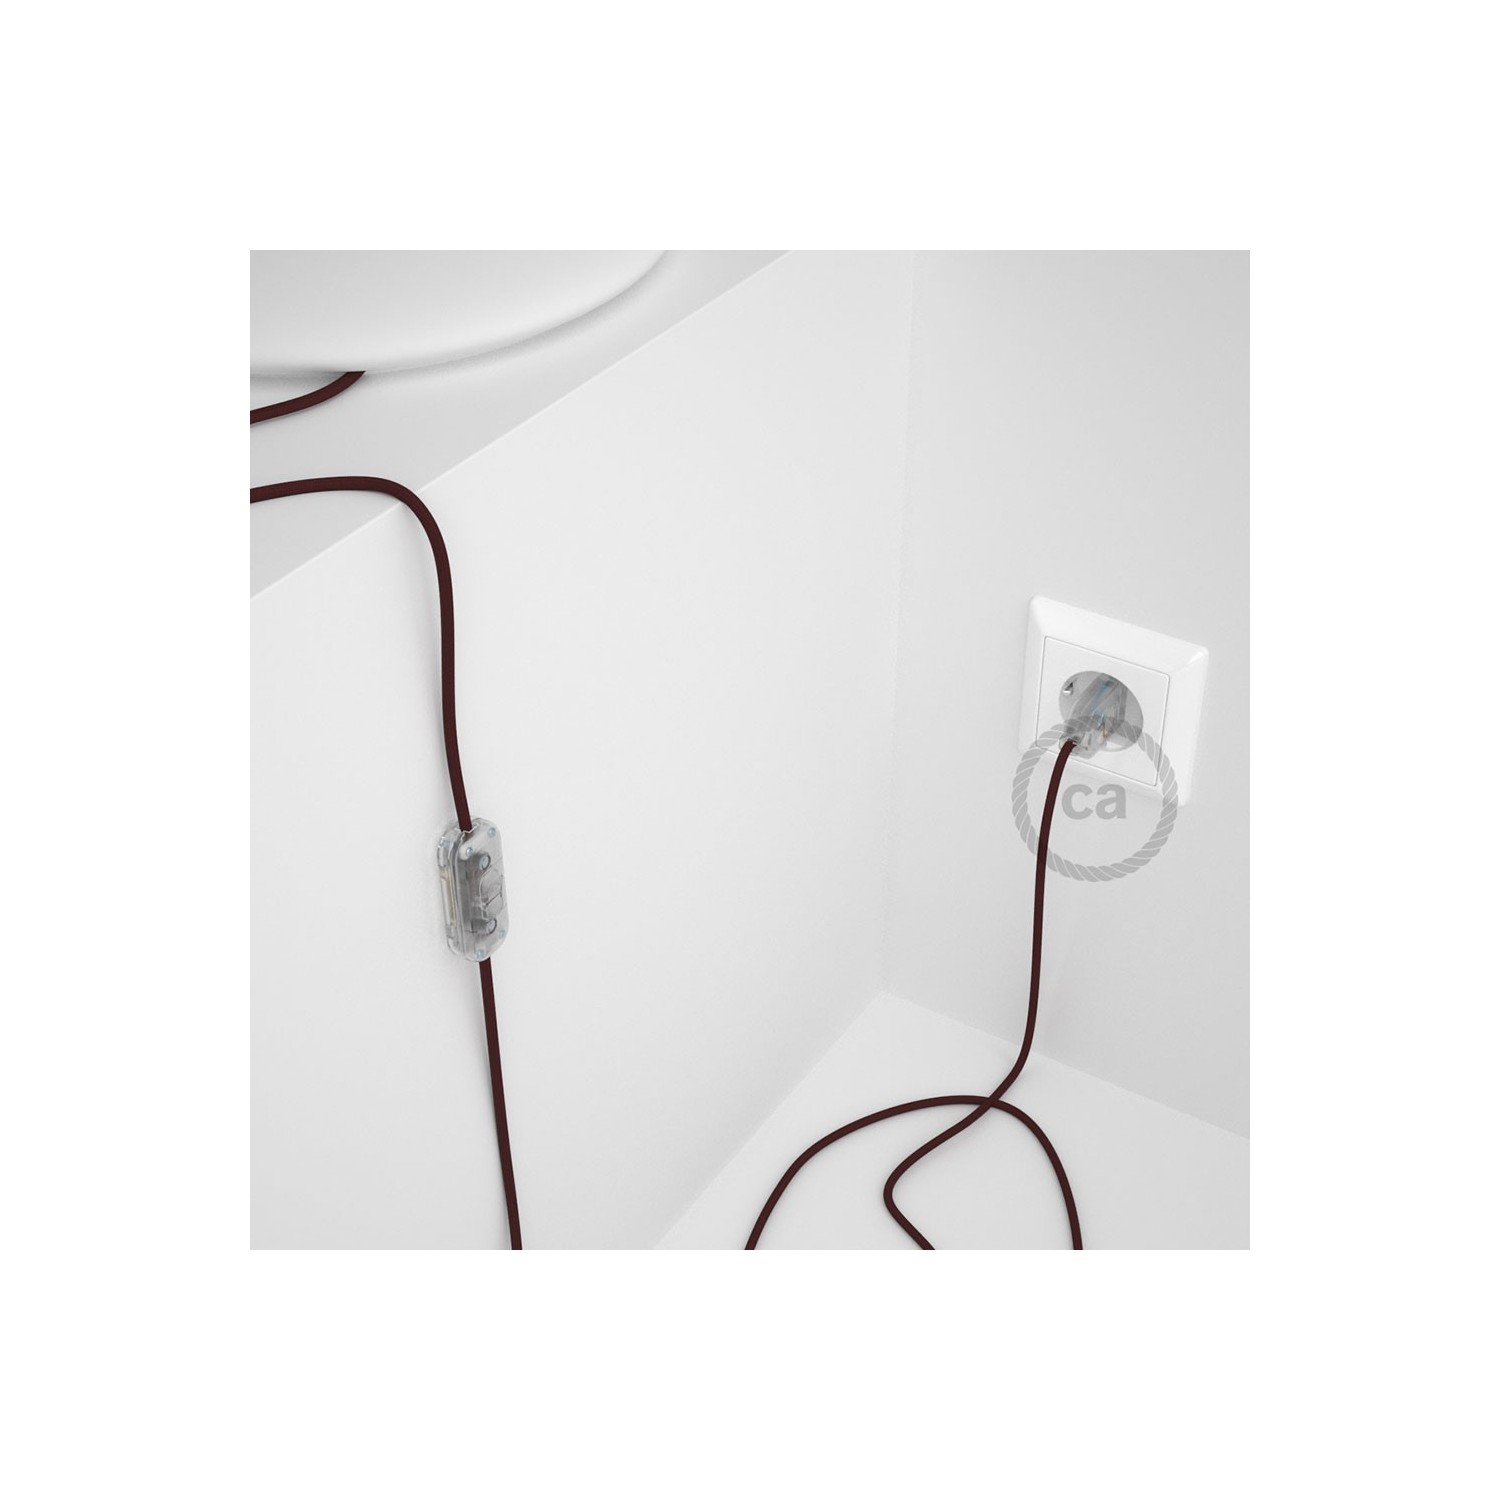 Cordon pour lampe, câble RM19 Effet Soie Bordeaux 1,80 m. Choisissez la couleur de la fiche et de l'interrupteur!